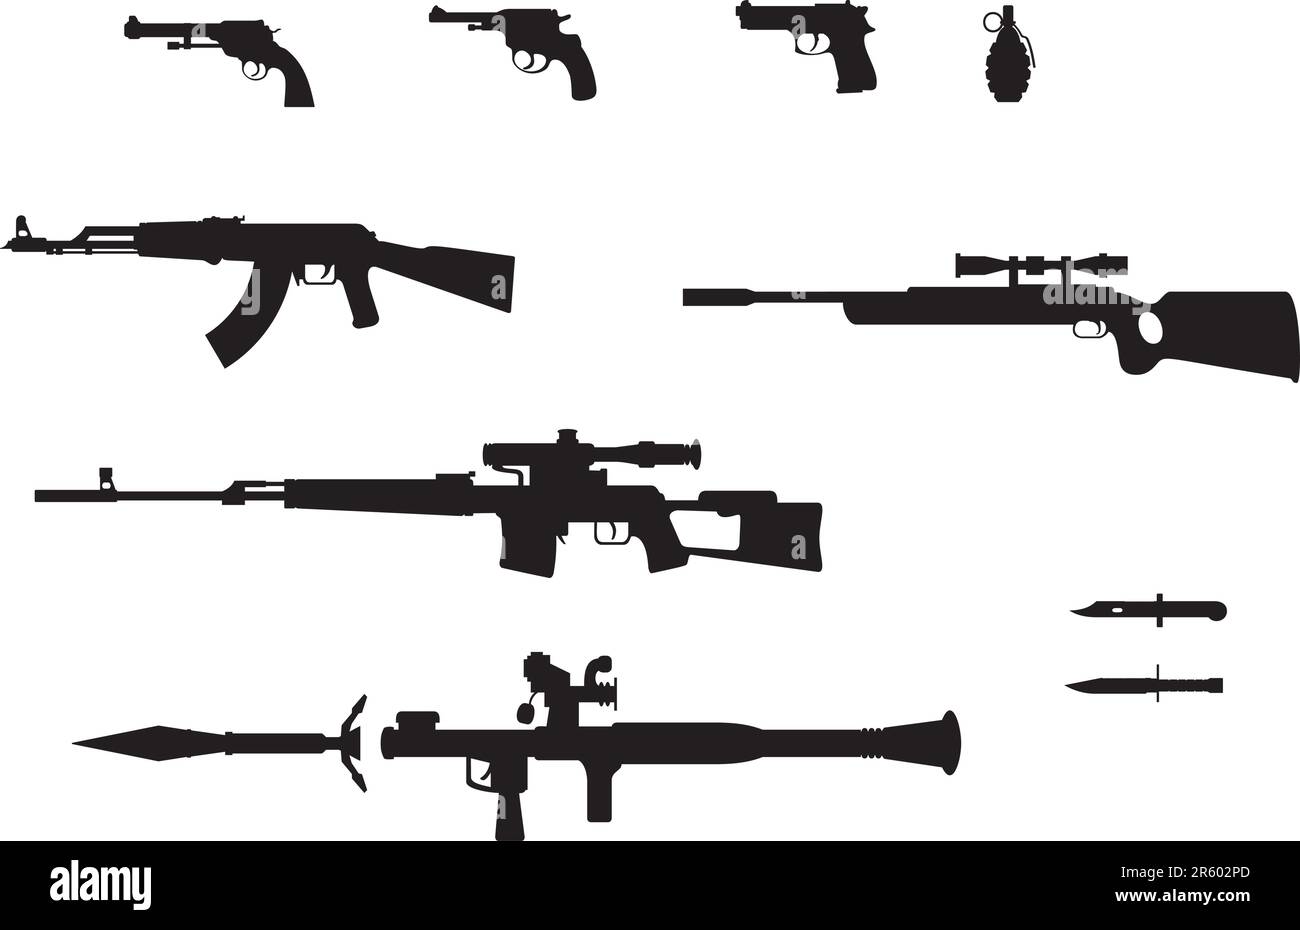 Silhouetten aus Pistole, Revolver, Granate, automatischen Waffen, Gewehren und Messern Stock Vektor